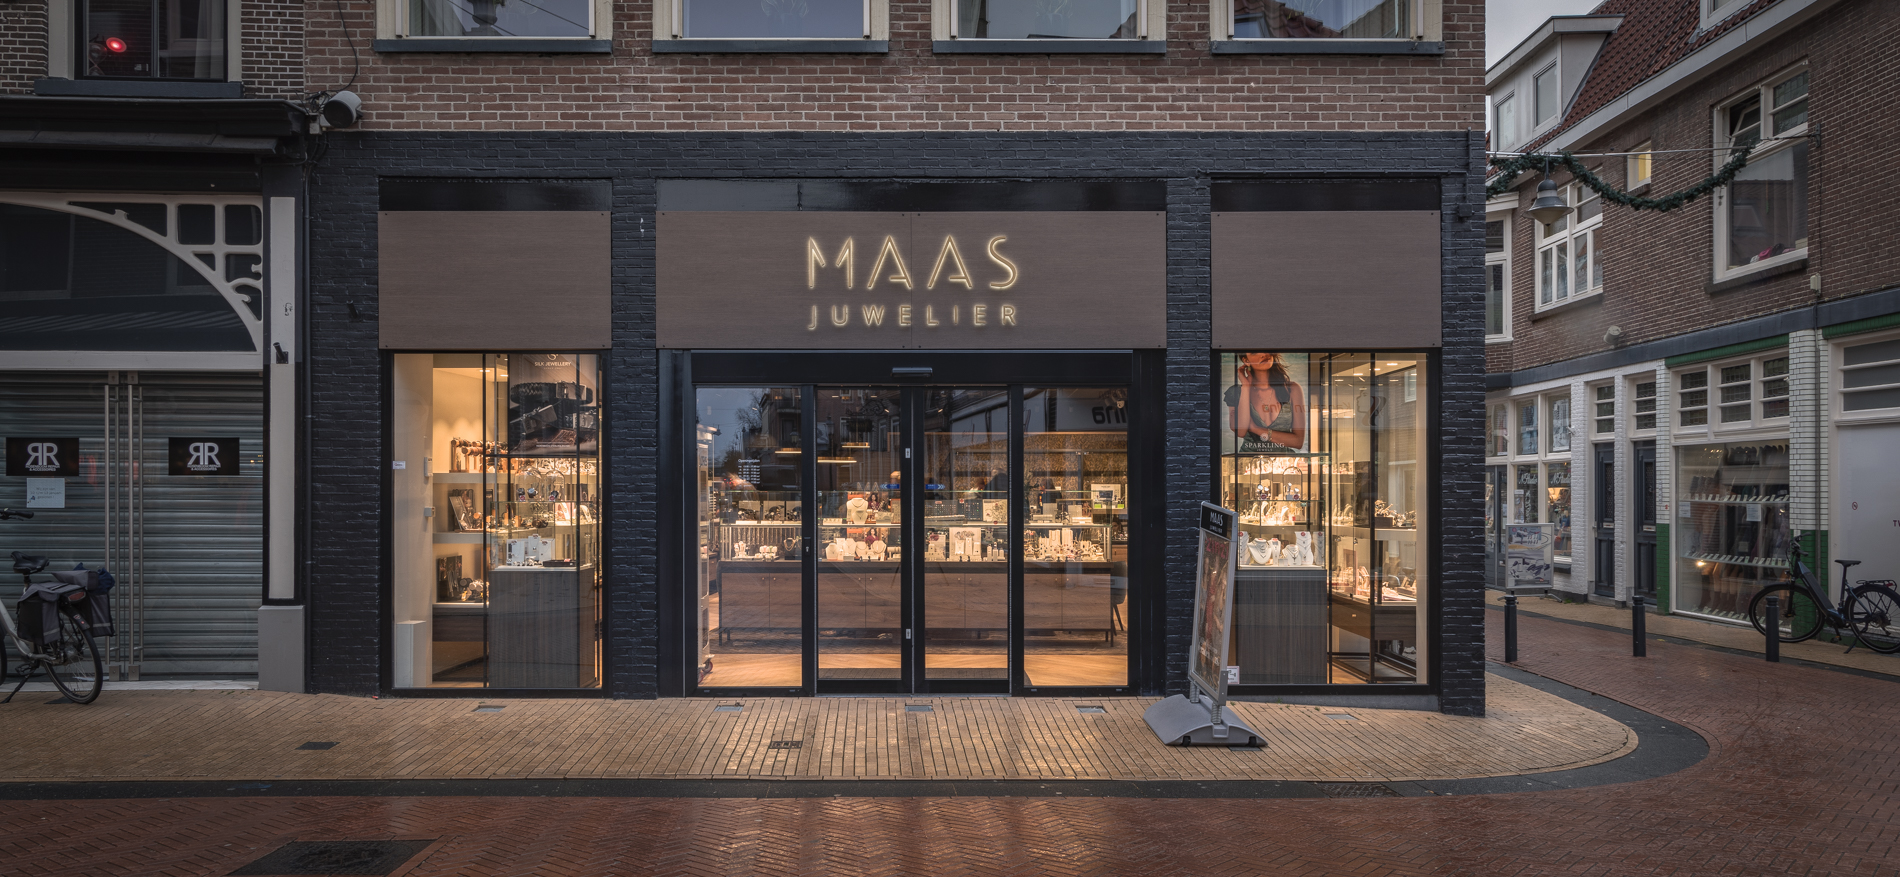 Juwelier Maas | Steenwijk (NL) - Schmuck